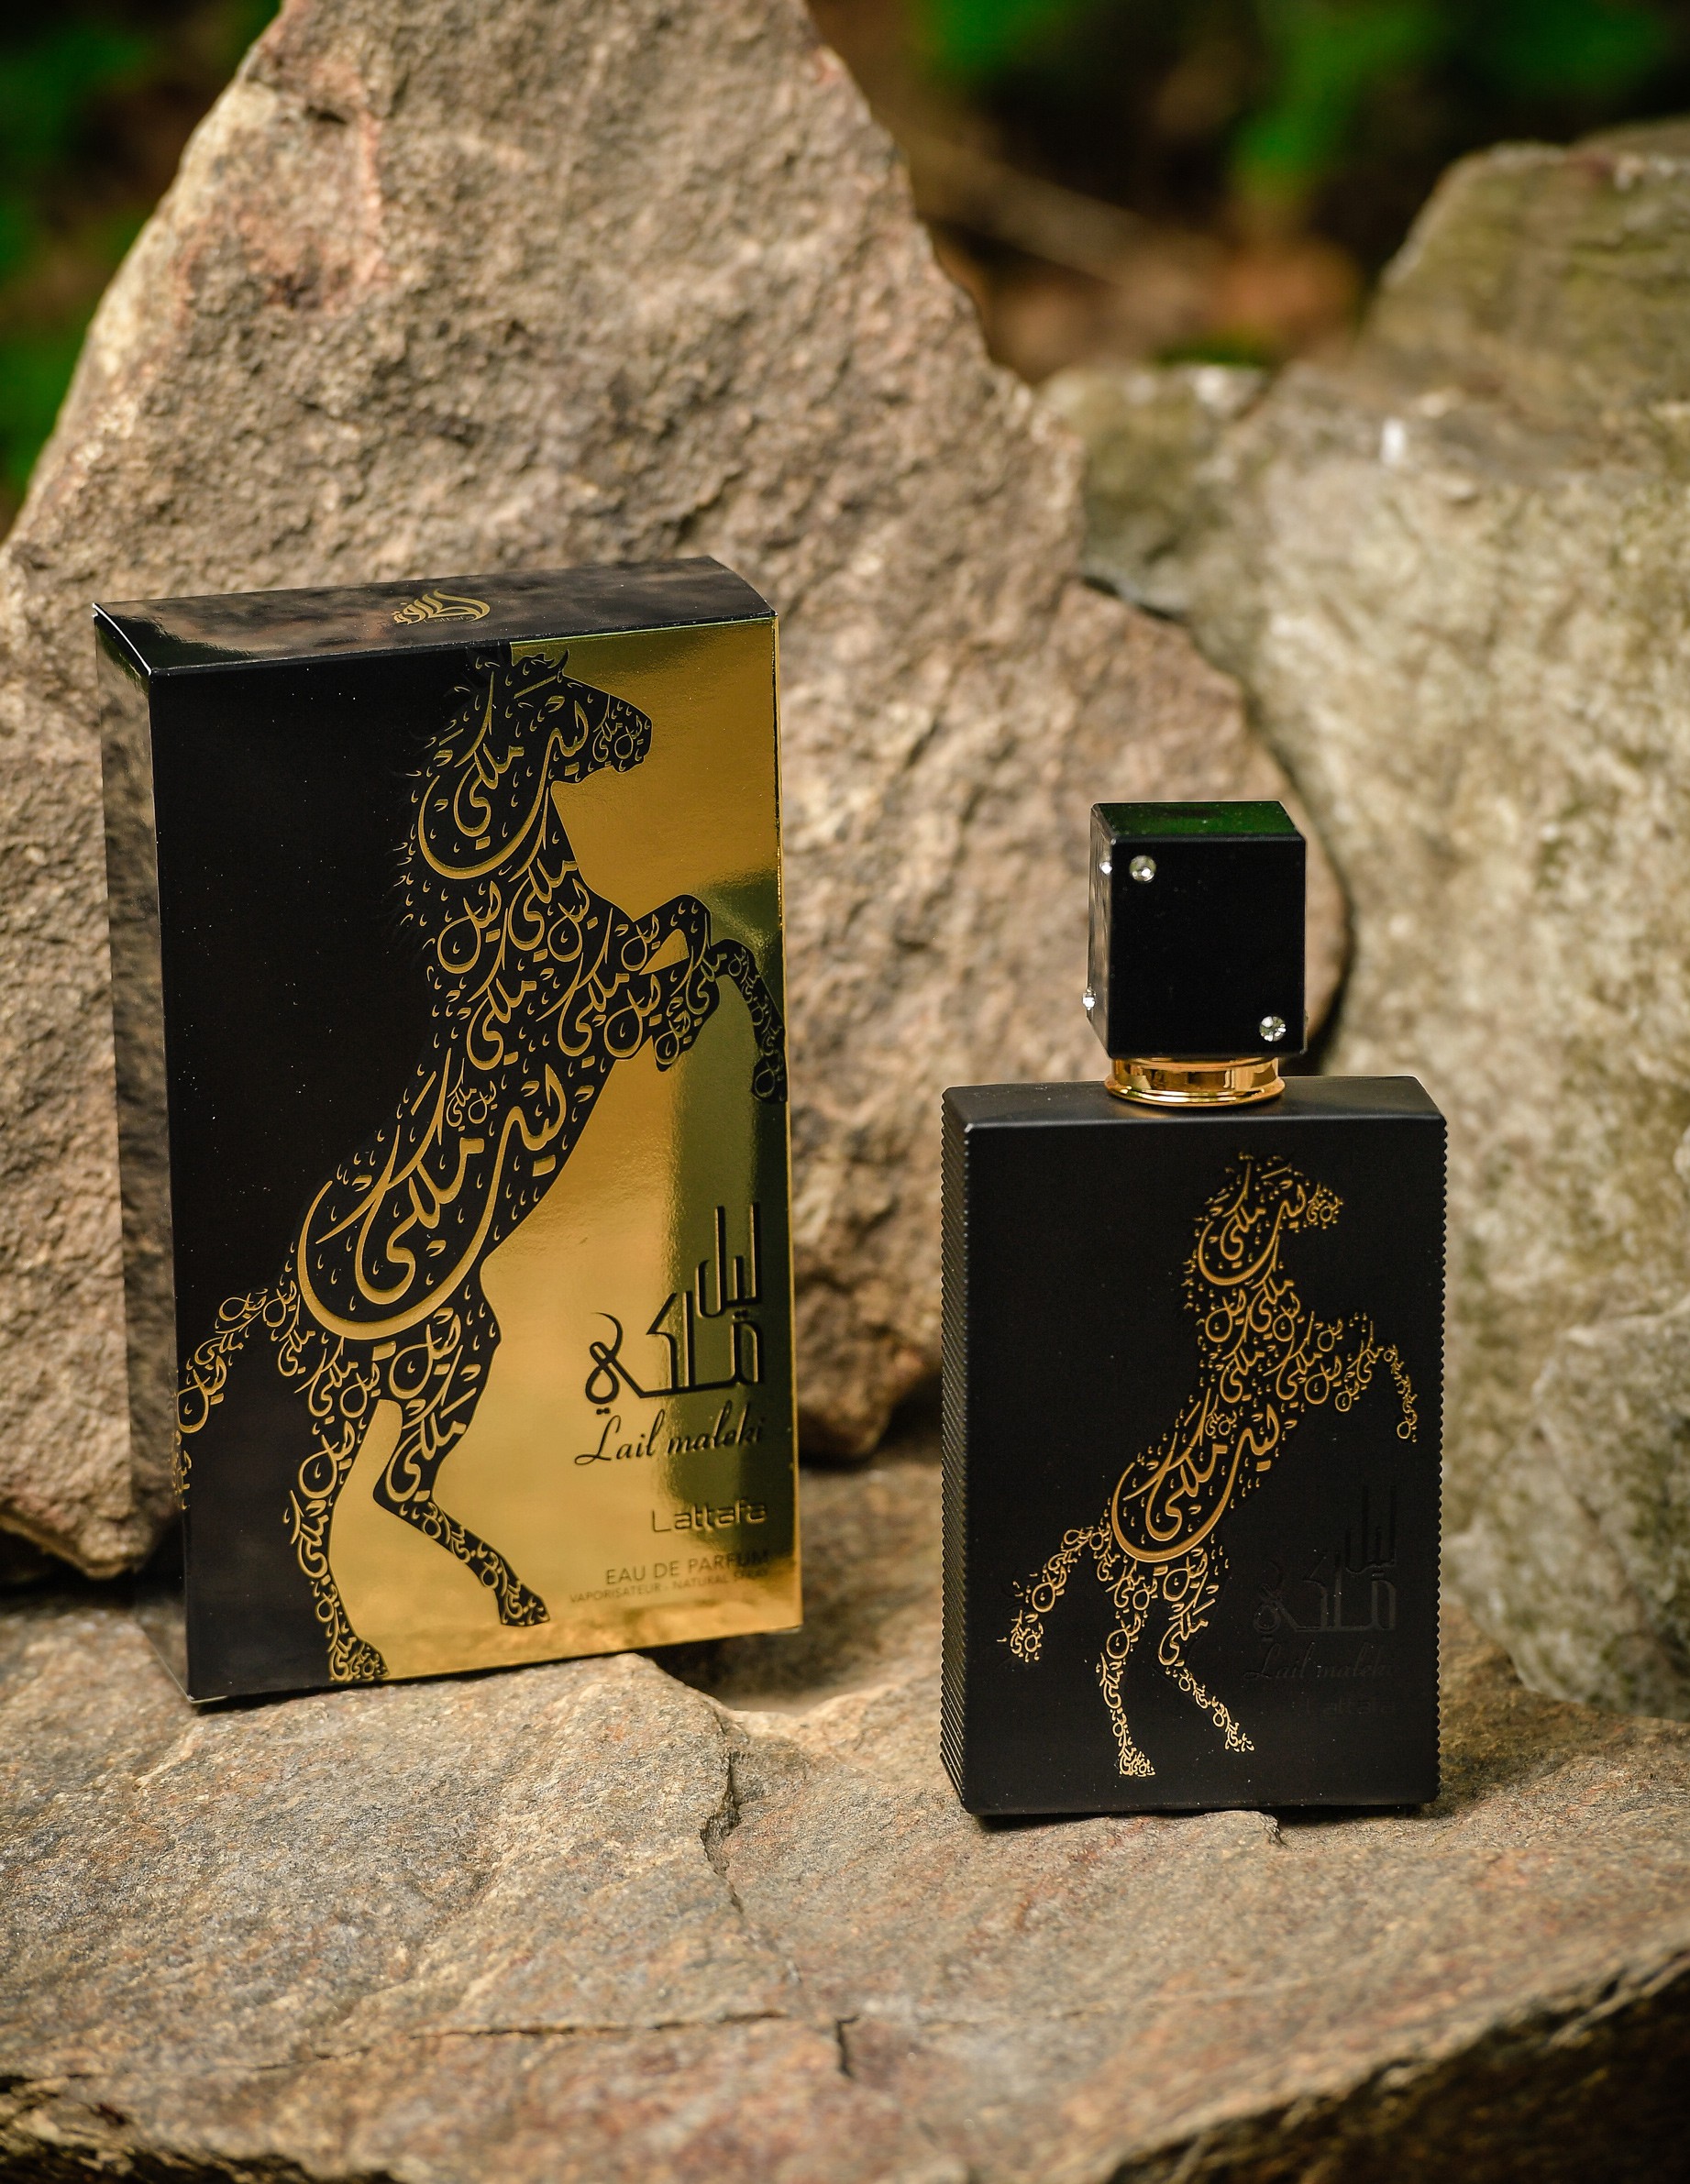 Ard Al Zaafaran Parfum arabesc lail maleki dama 100 ml